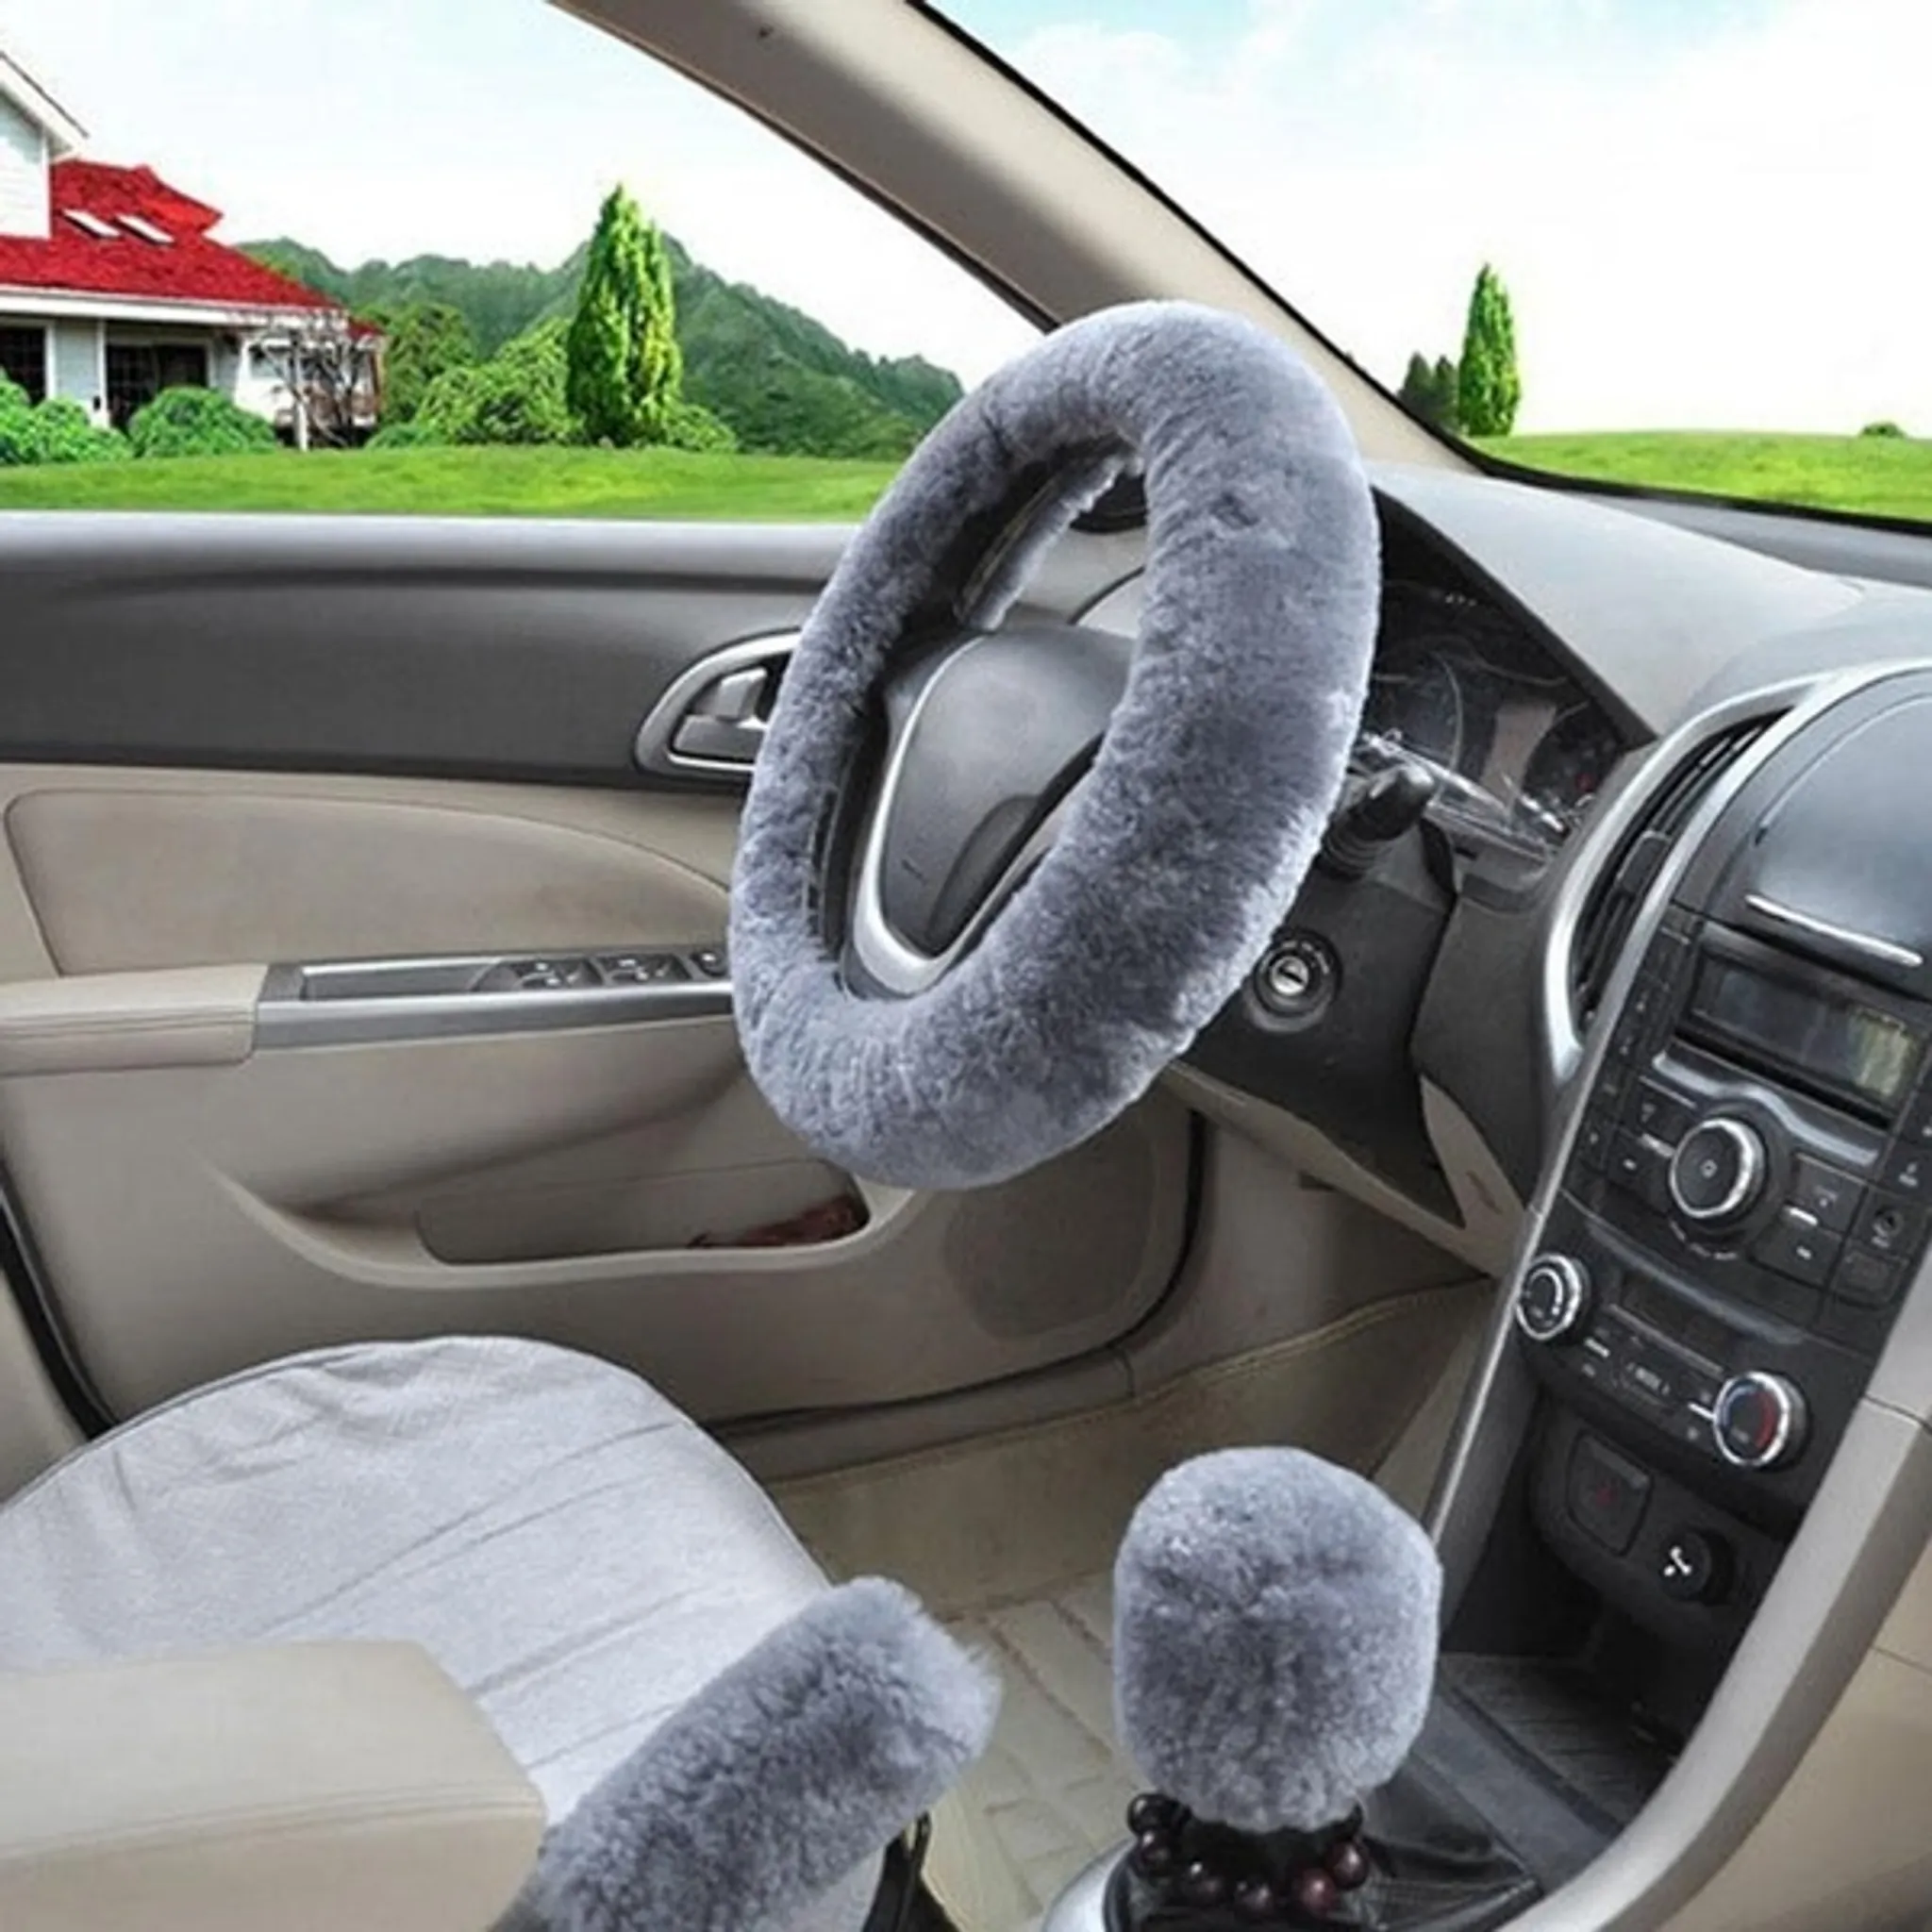 Beheizbarer Lenkrad-Bezug gegen kalte Hände im Auto